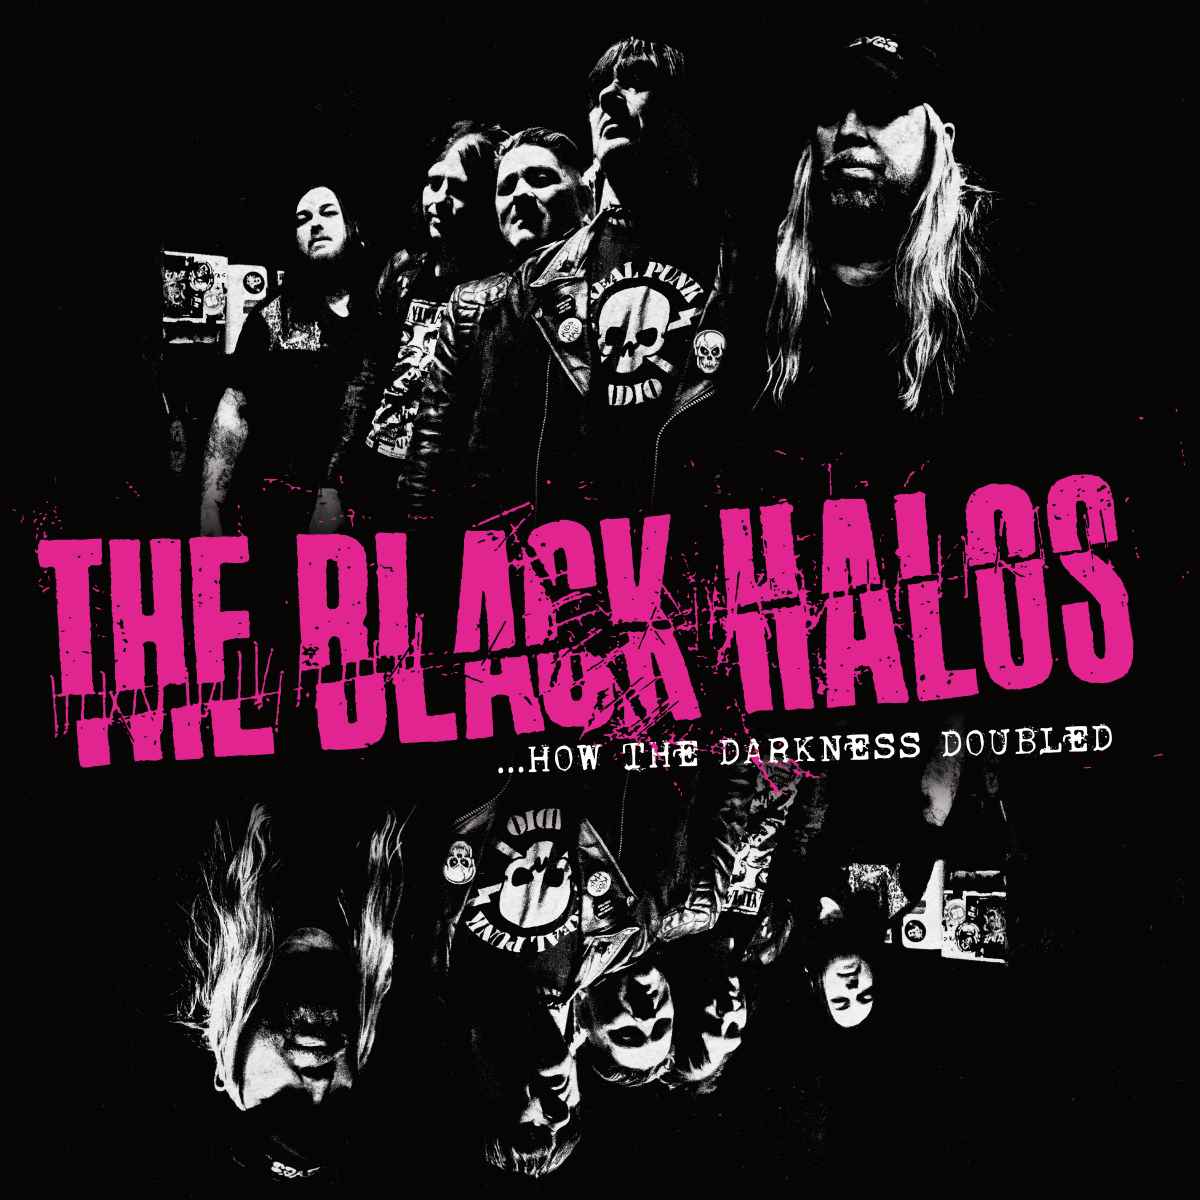 Tornano i Black Halos con un nuovo album